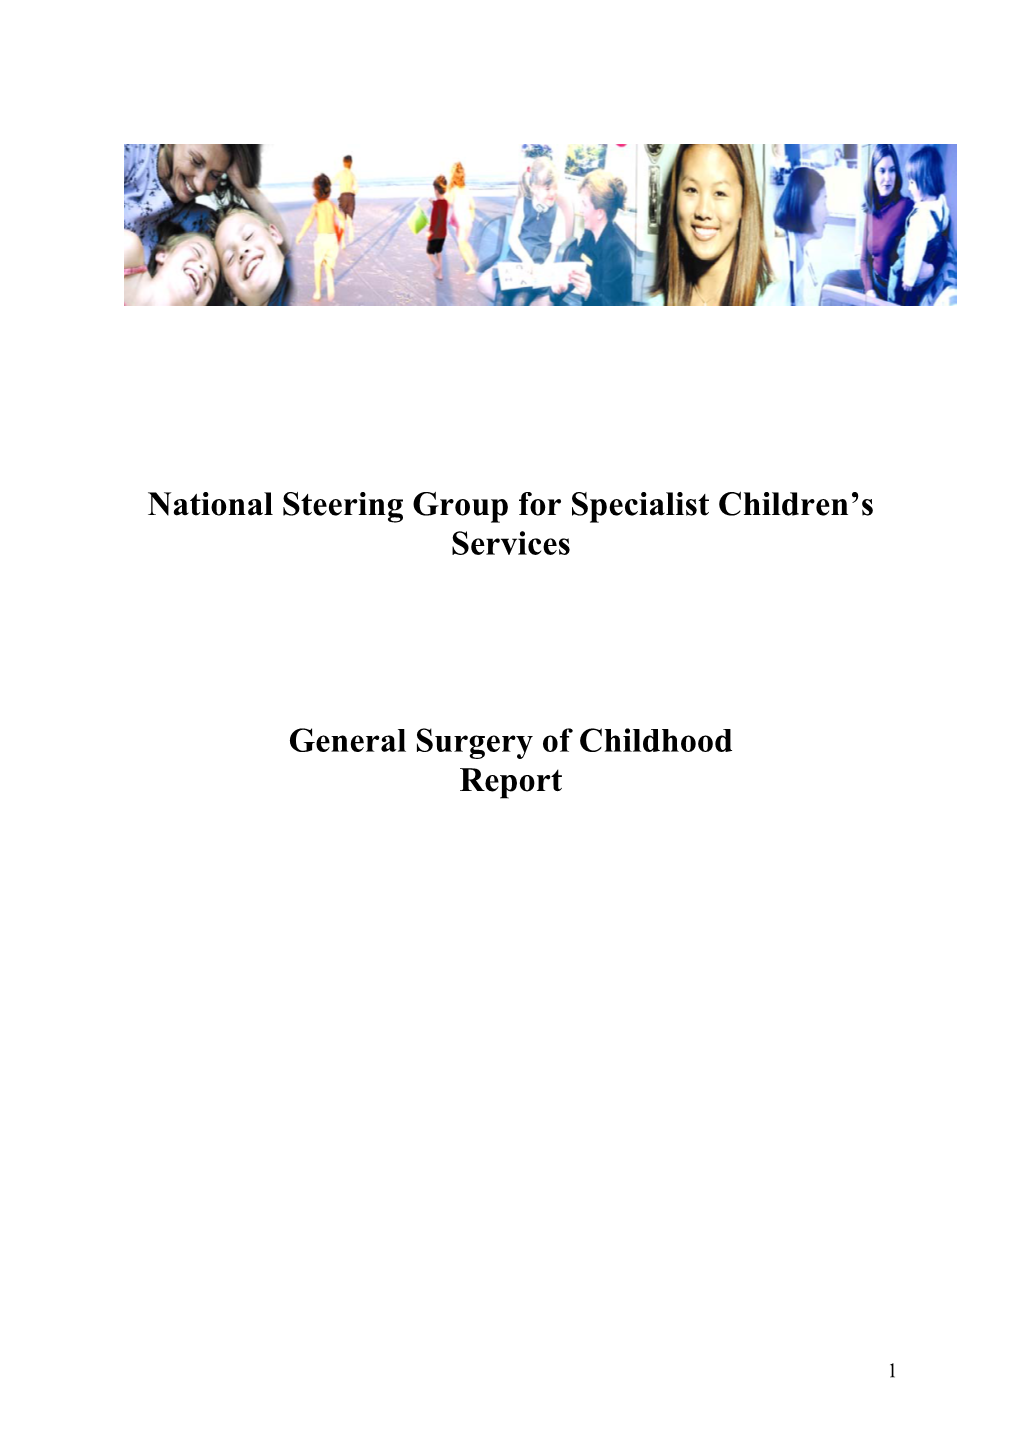 Specialist Children's Services in Scotland